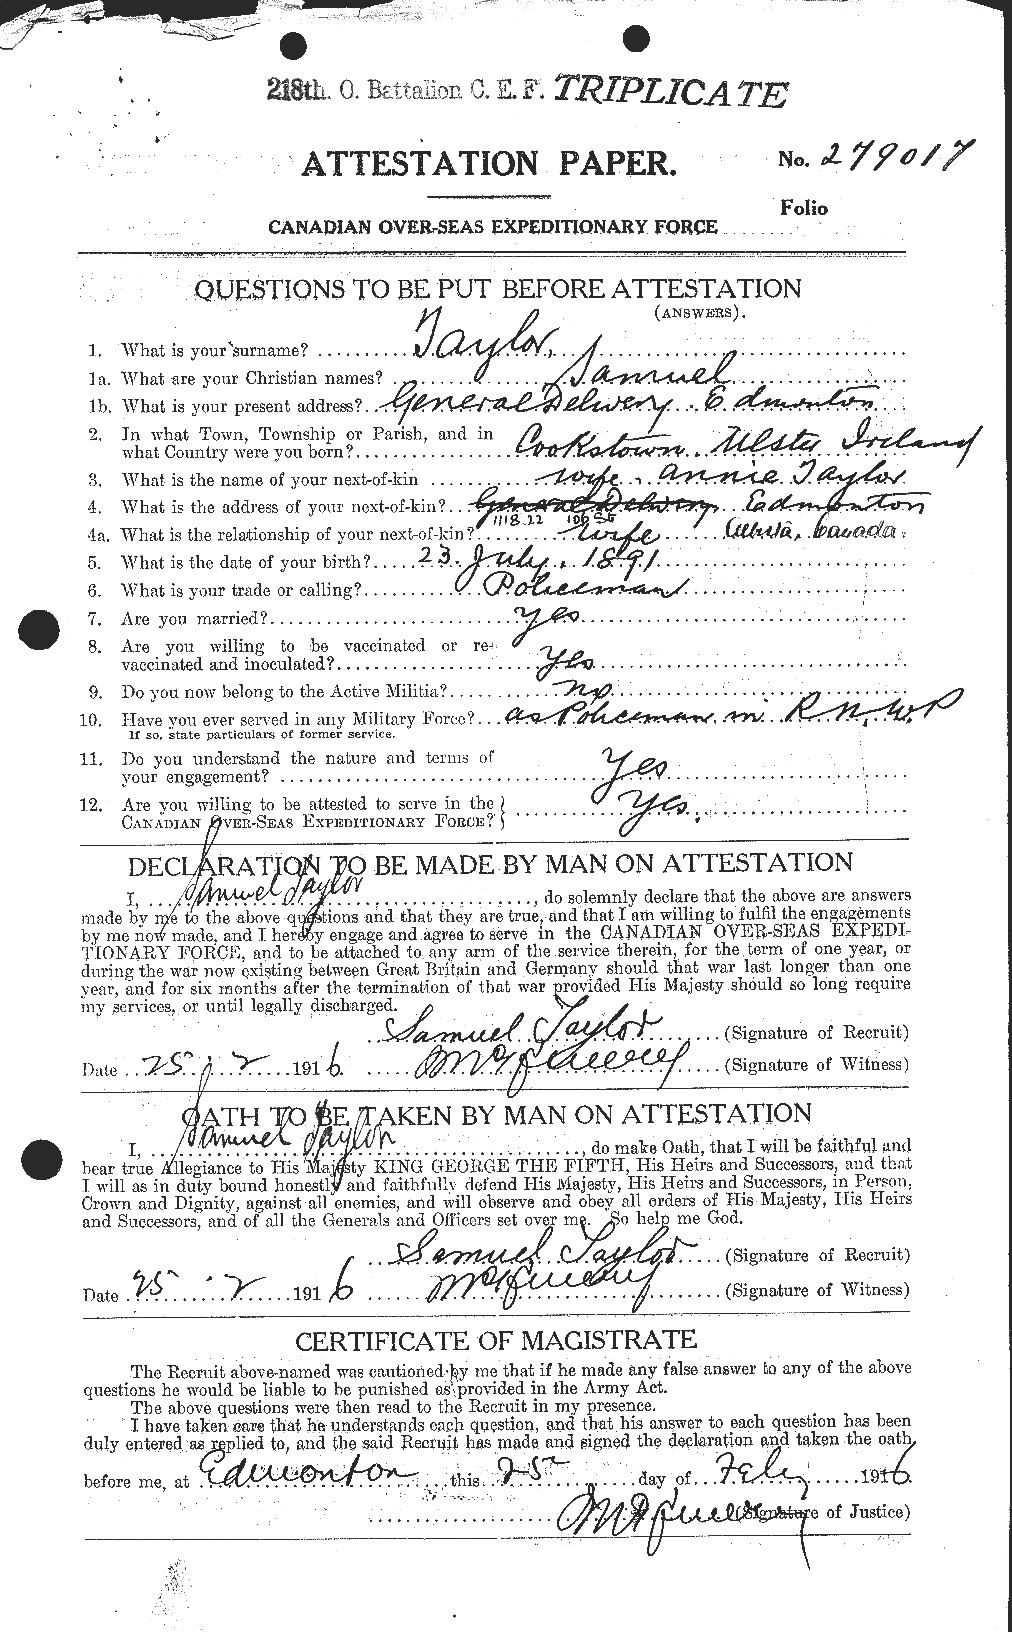 Dossiers du Personnel de la Première Guerre mondiale - CEC 627546a